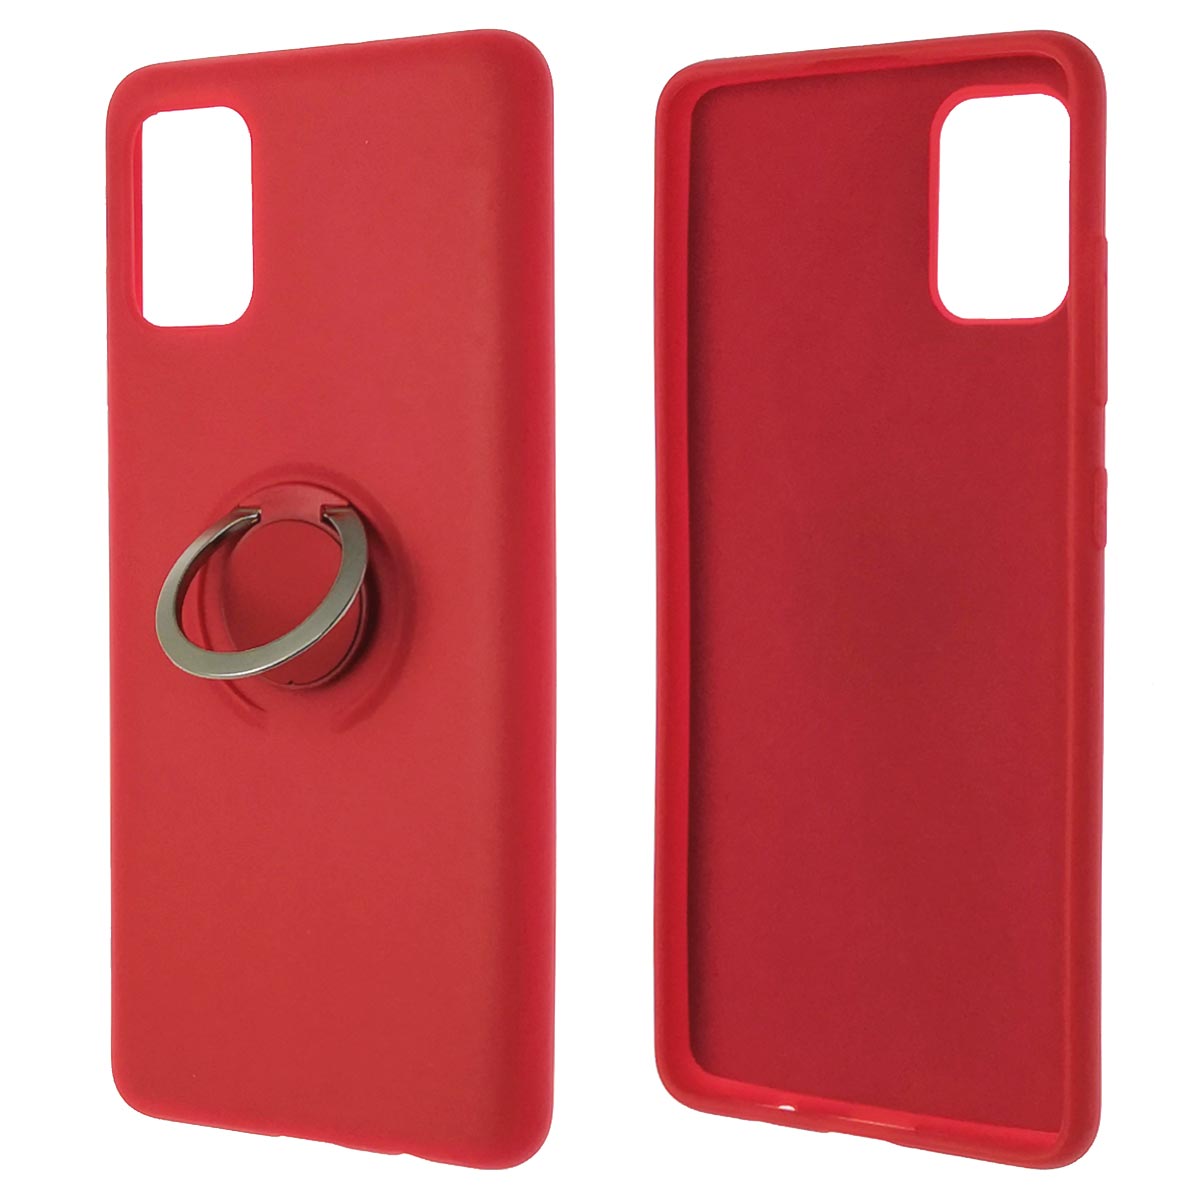 Чехол накладка RING для APPLE iPhone 11, силикон, кольцо держатель, цвет красный